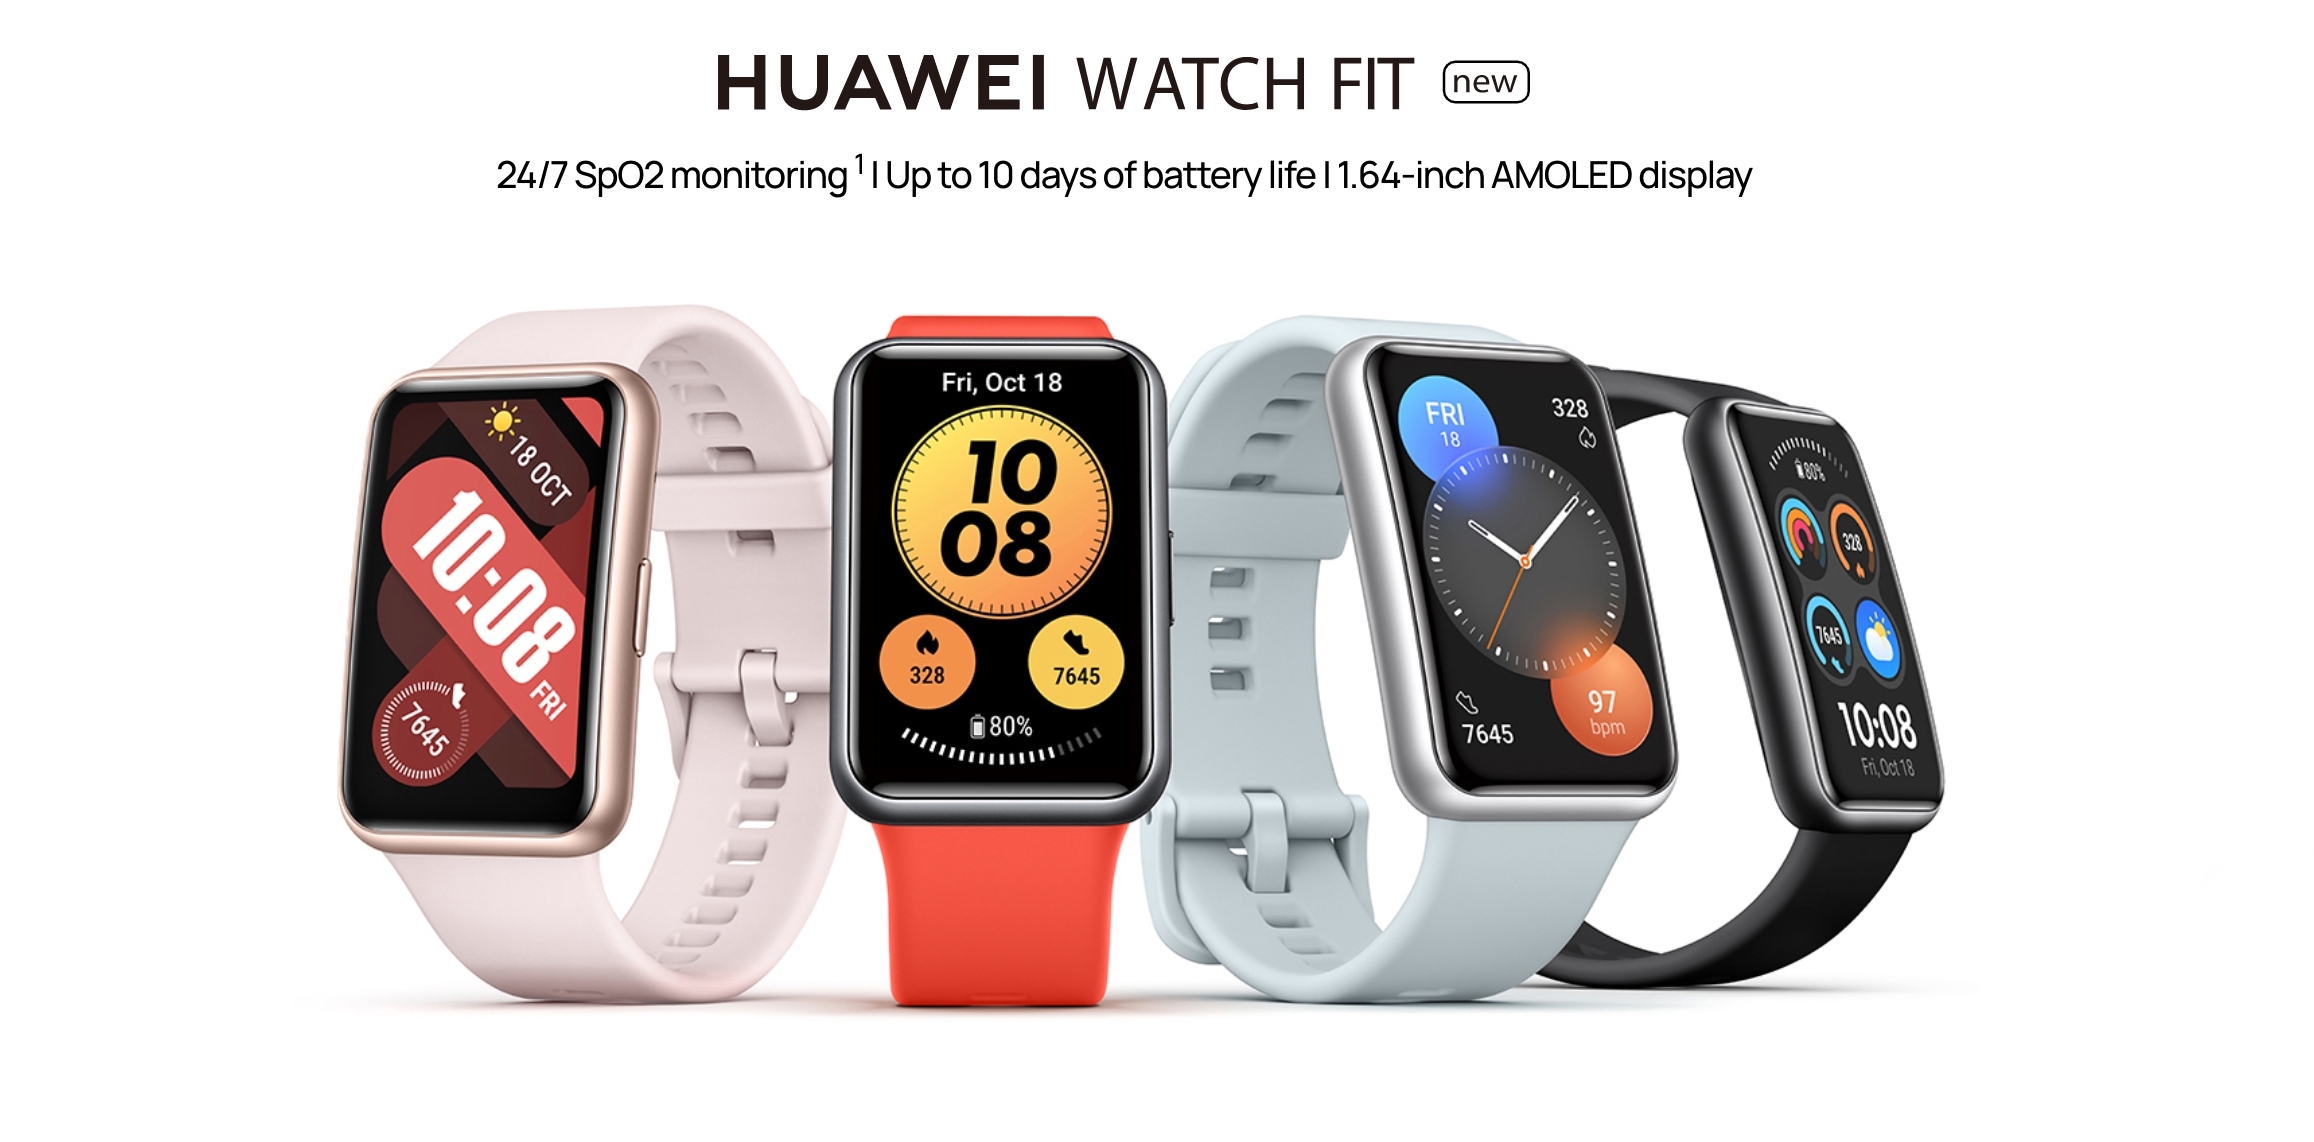 Huawei Watch Fit new з AMOLED-екраном, NFC та датчиком SpO2 вийде в Європі